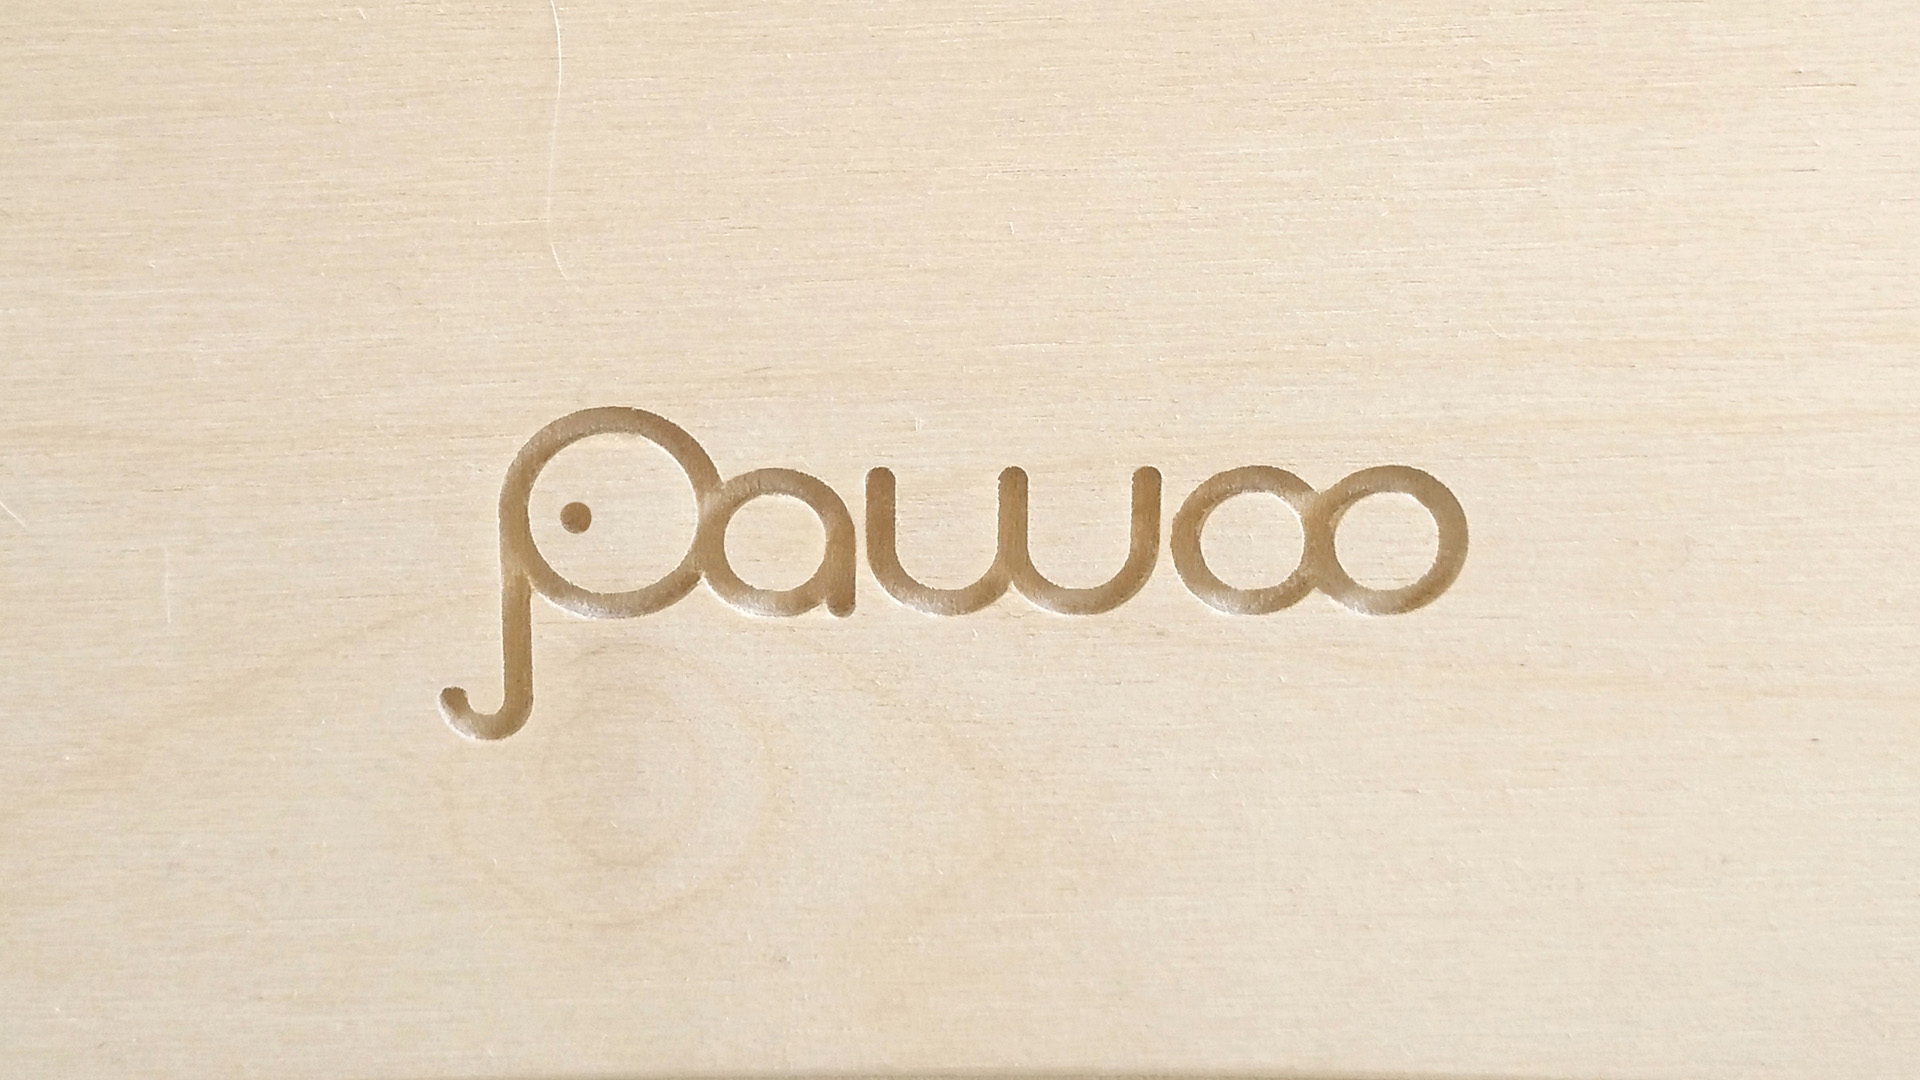 incisione logo pawoo su legno